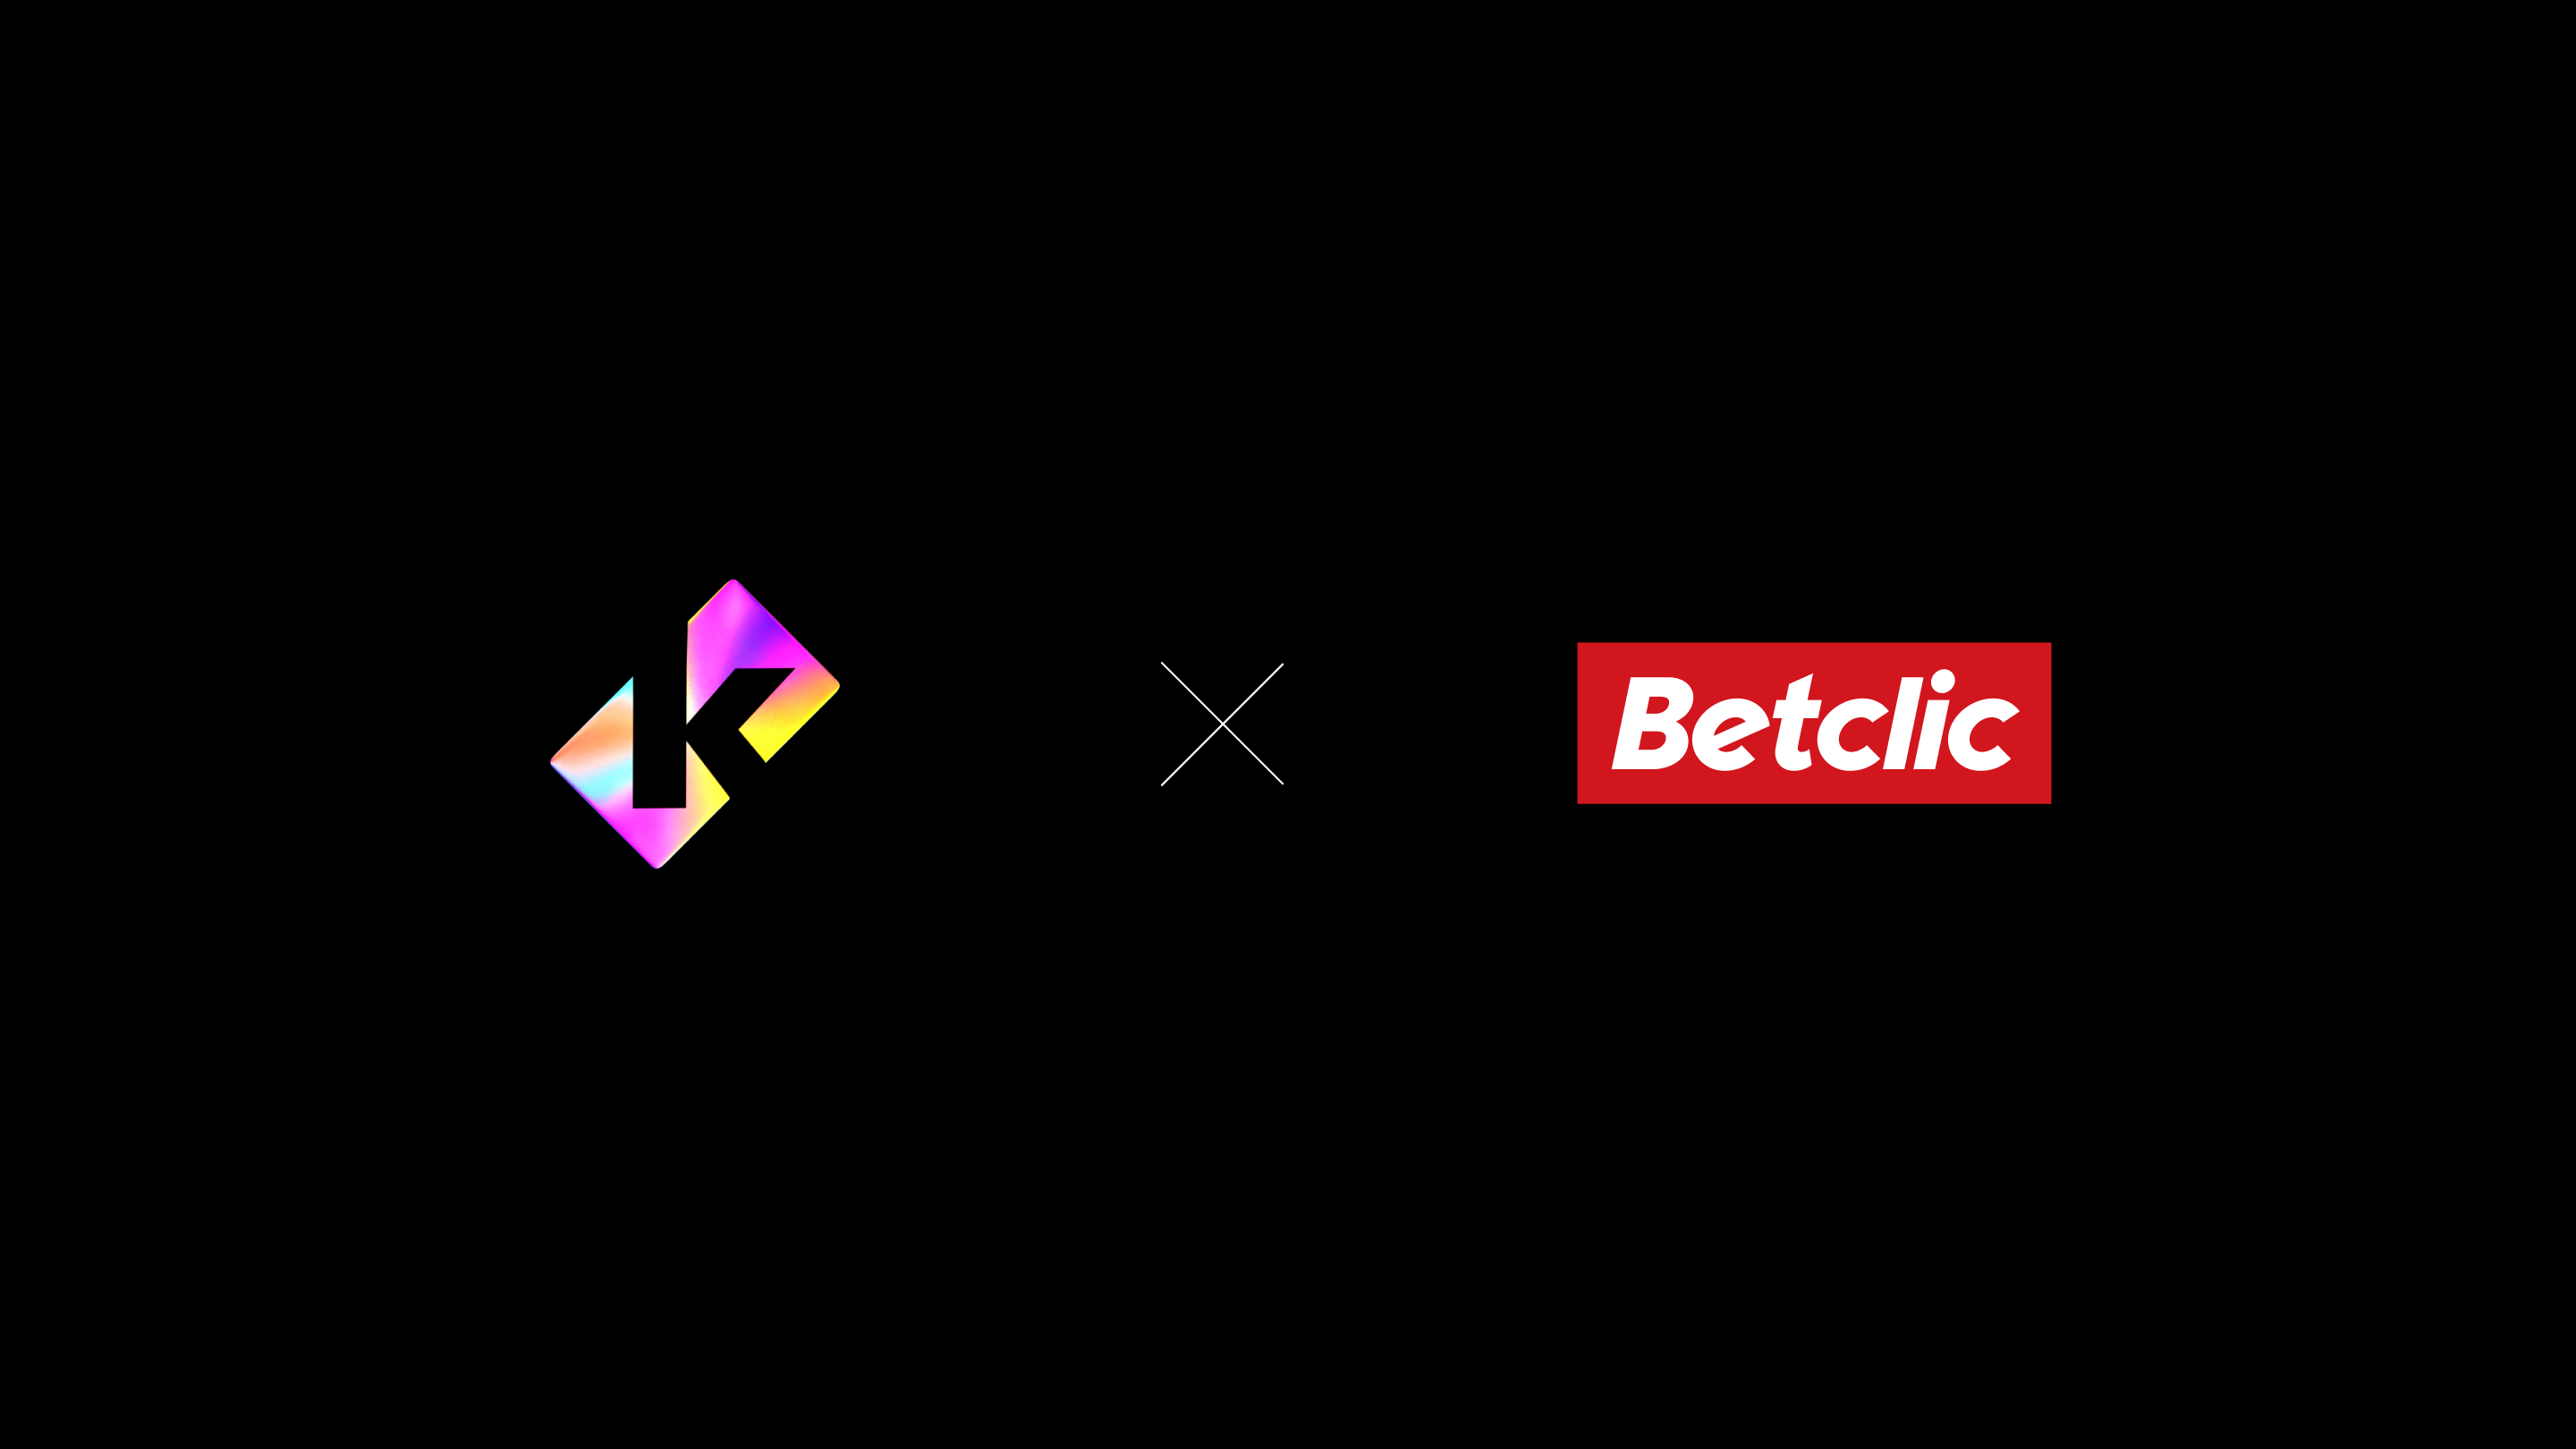 Betclic and Kiut agency logos